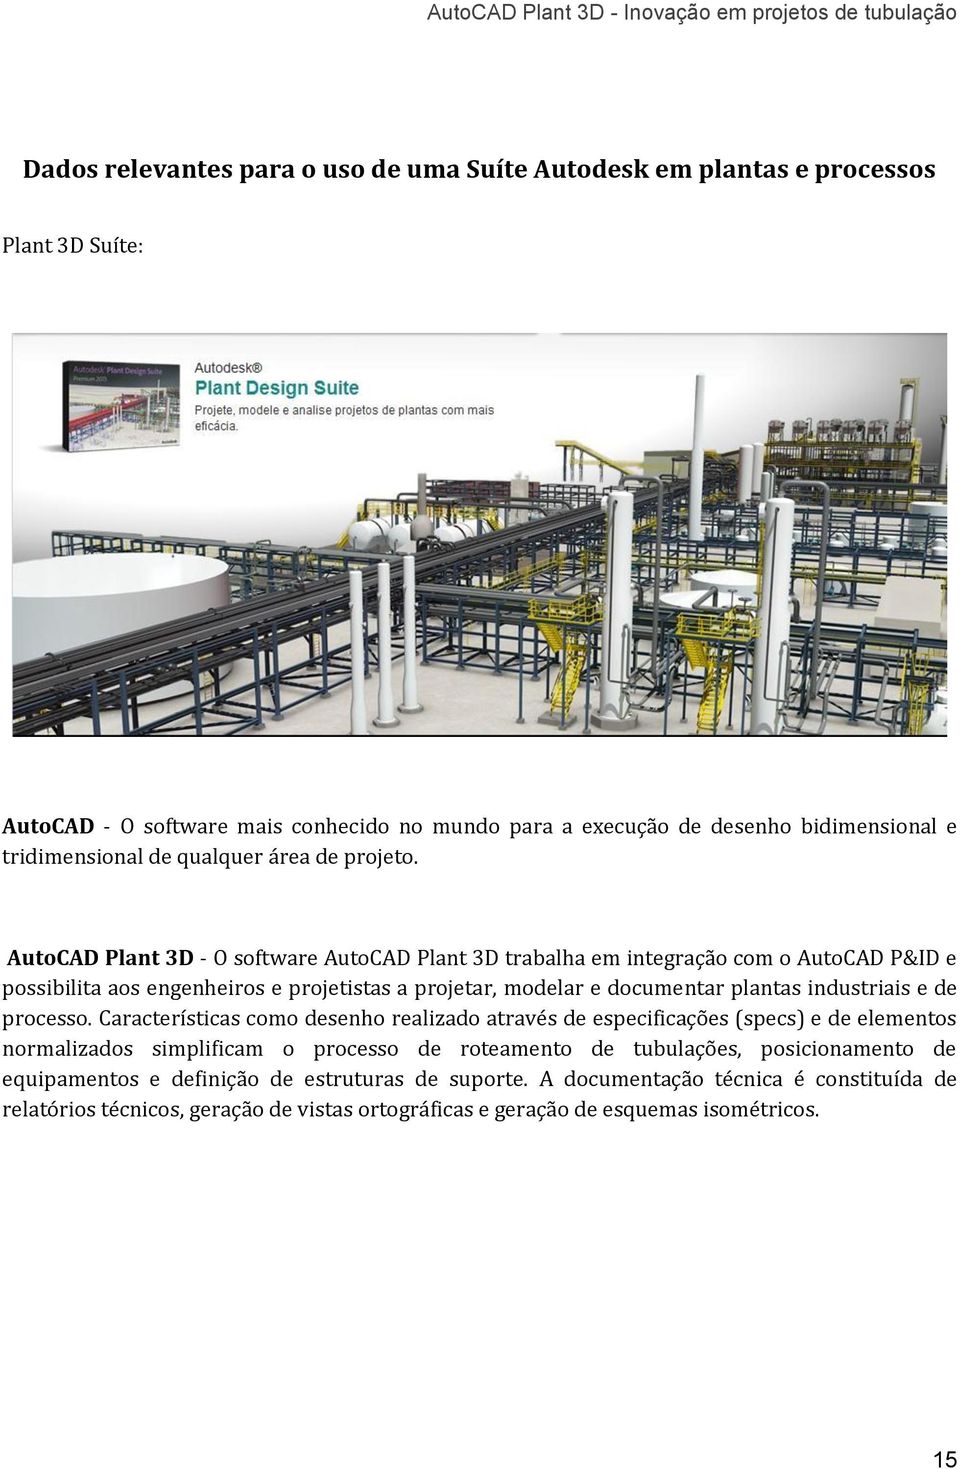 AutoCAD Plant 3D - O software AutoCAD Plant 3D trabalha em integração com o AutoCAD P&ID e possibilita aos engenheiros e projetistas a projetar, modelar e documentar plantas industriais e de